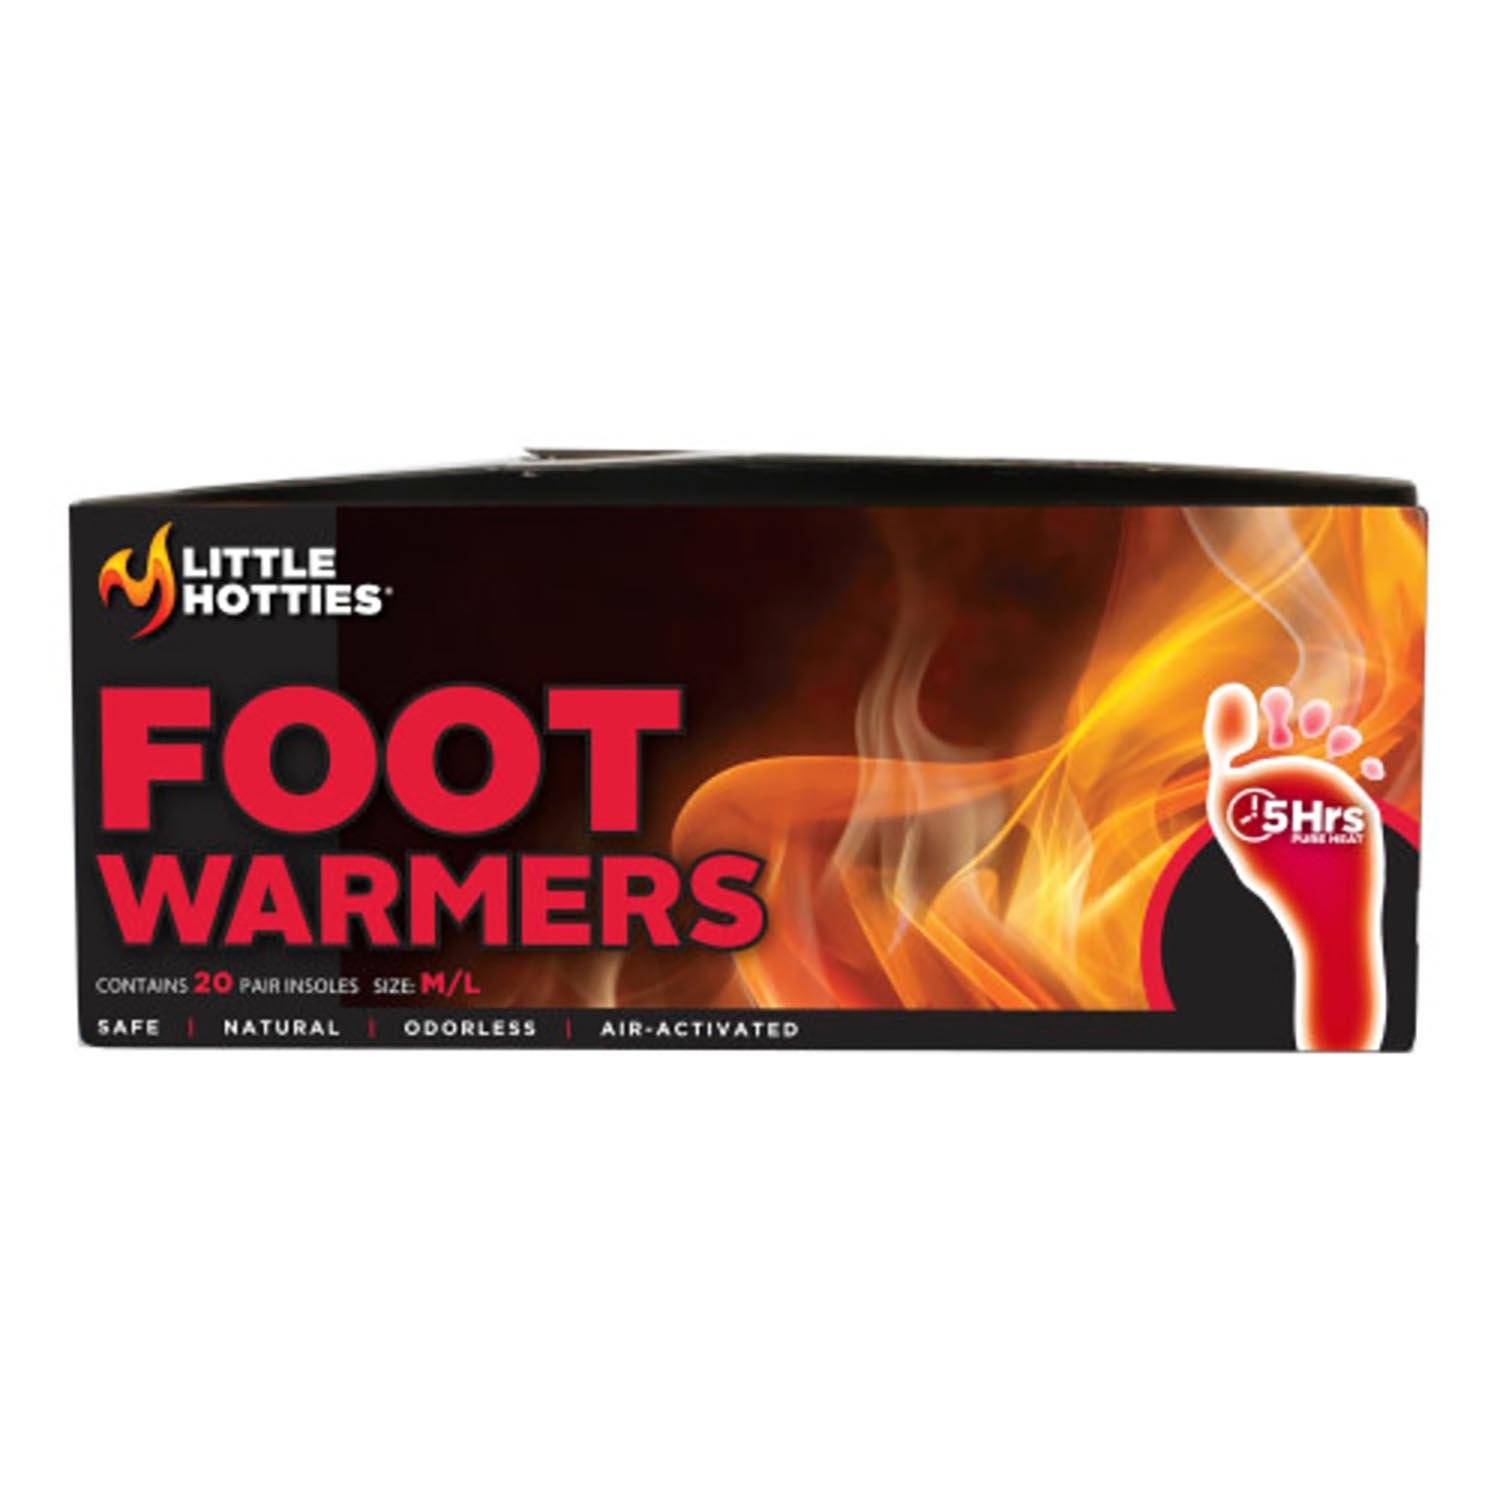 Little Hotties Foot Warmers